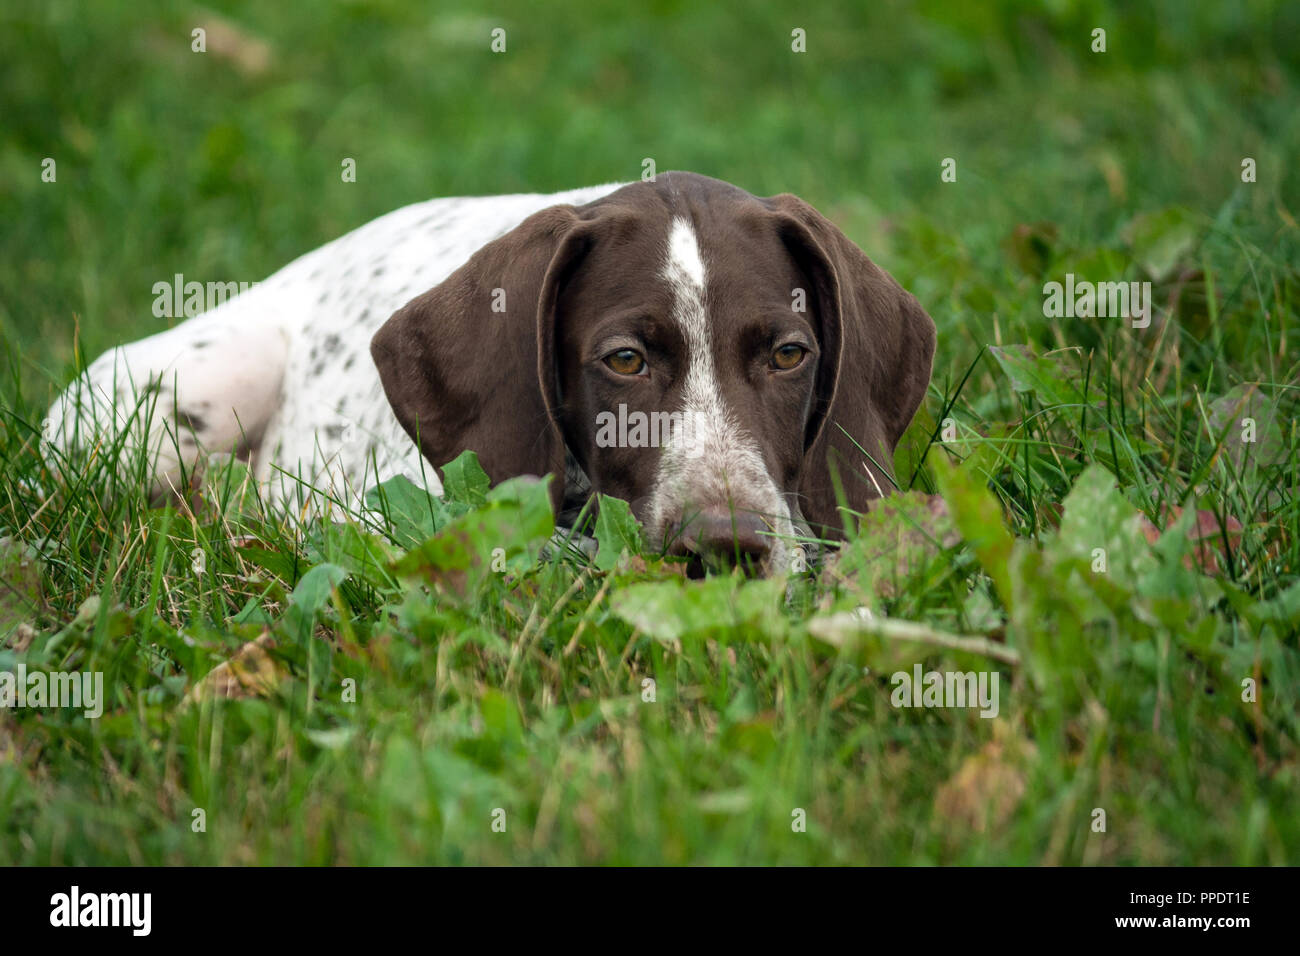 Braque Allemand, un kurtshaar allemand chiot tacheté brun se trouve de l'herbe bien verte, close-up portrait, à la tristement vers le bas, mettre sa tête sur Banque D'Images